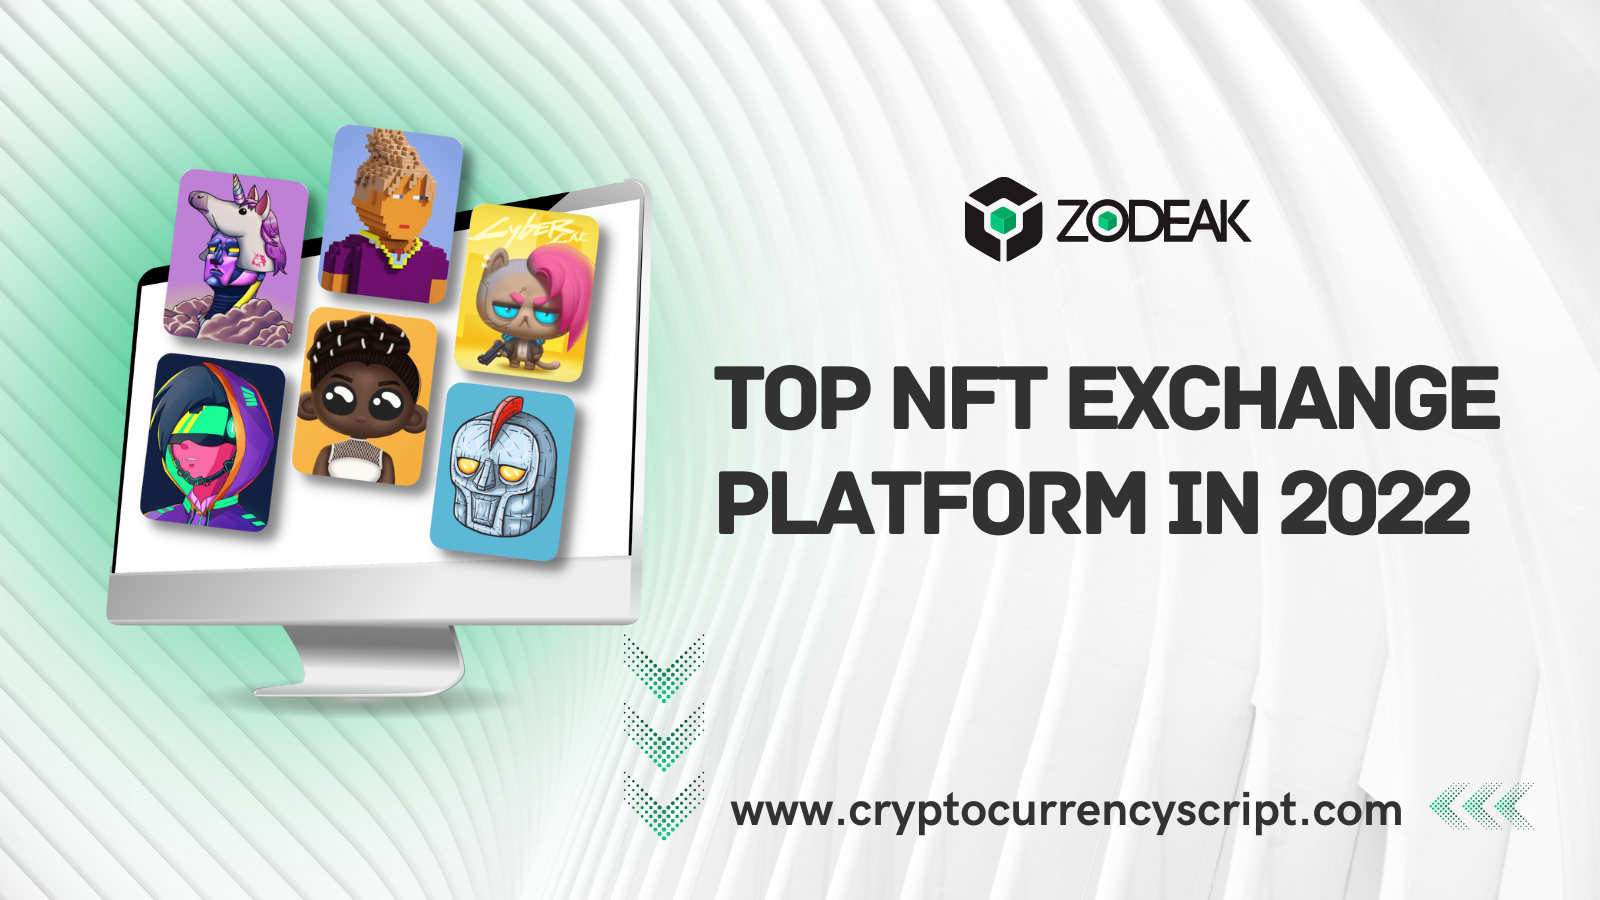 Top NFT Exchange Platforms in 2022 - Zodeak